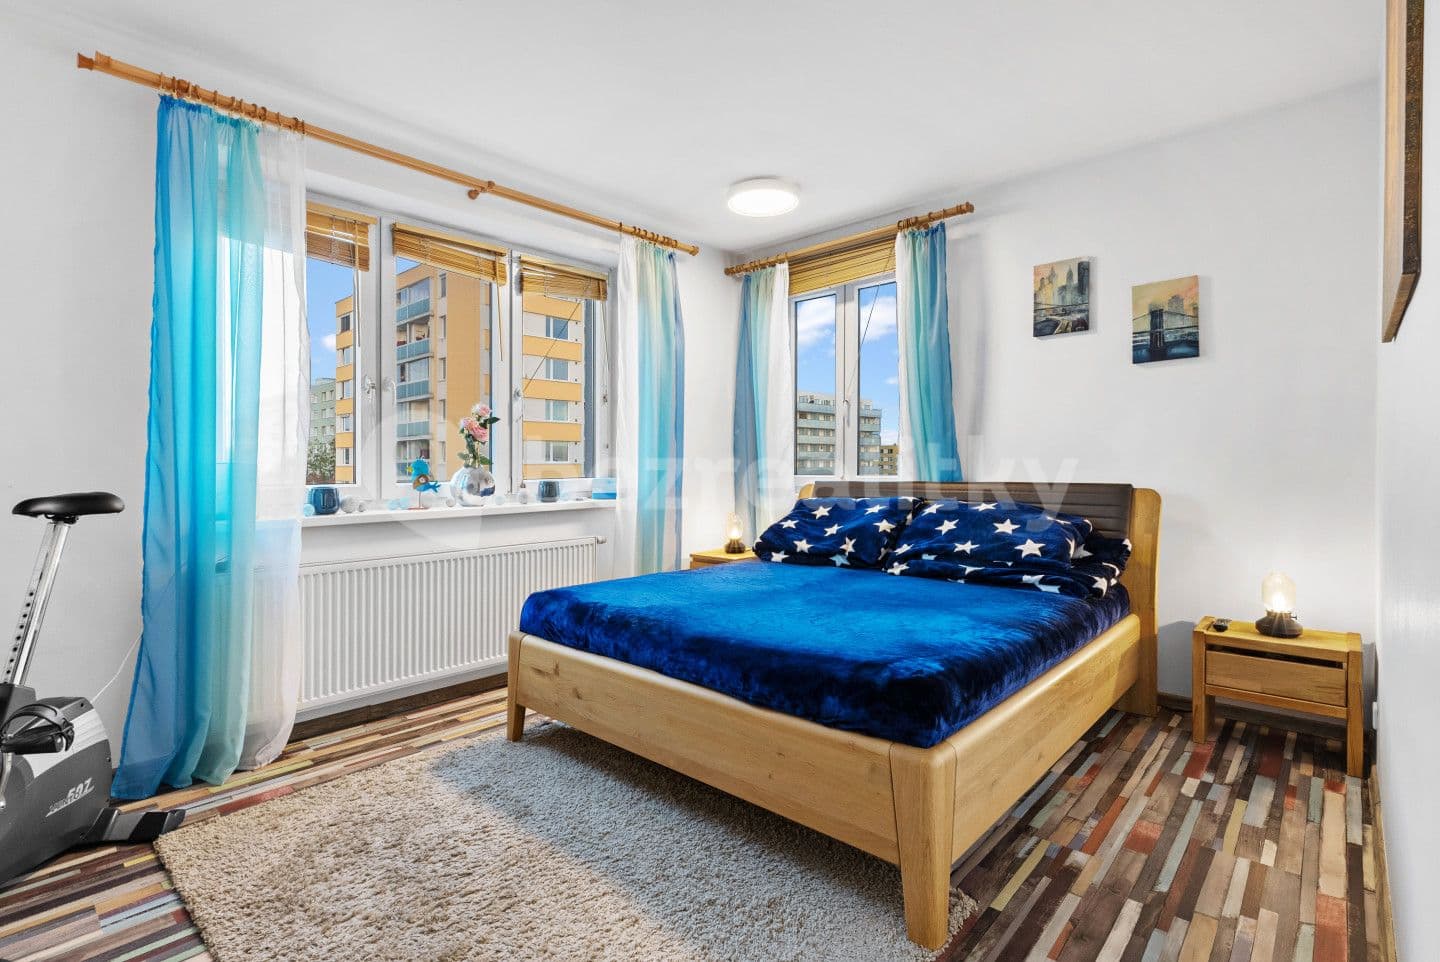 3 bedroom flat for sale, 101 m², Husova, Jičín, Královéhradecký Region